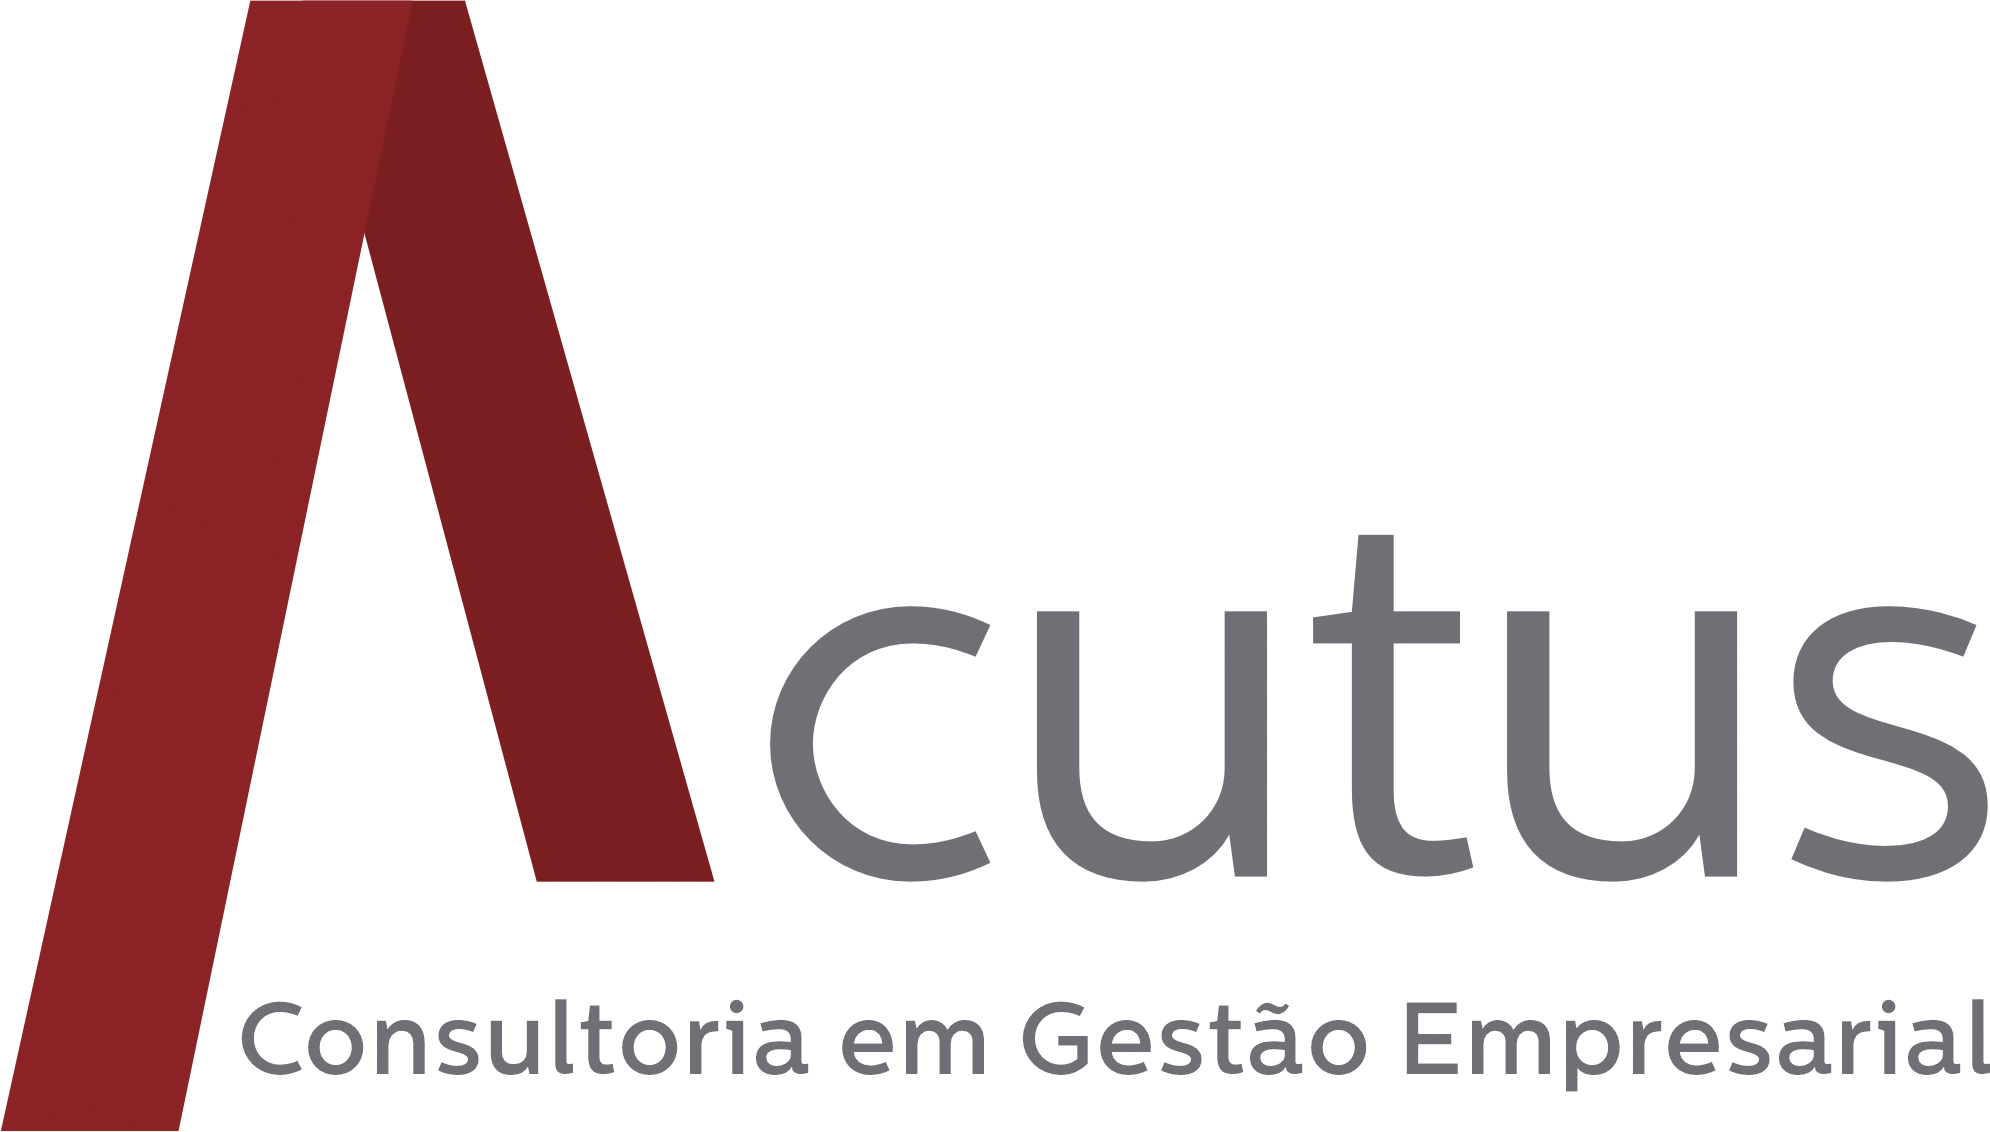 (c) Acutus.com.br